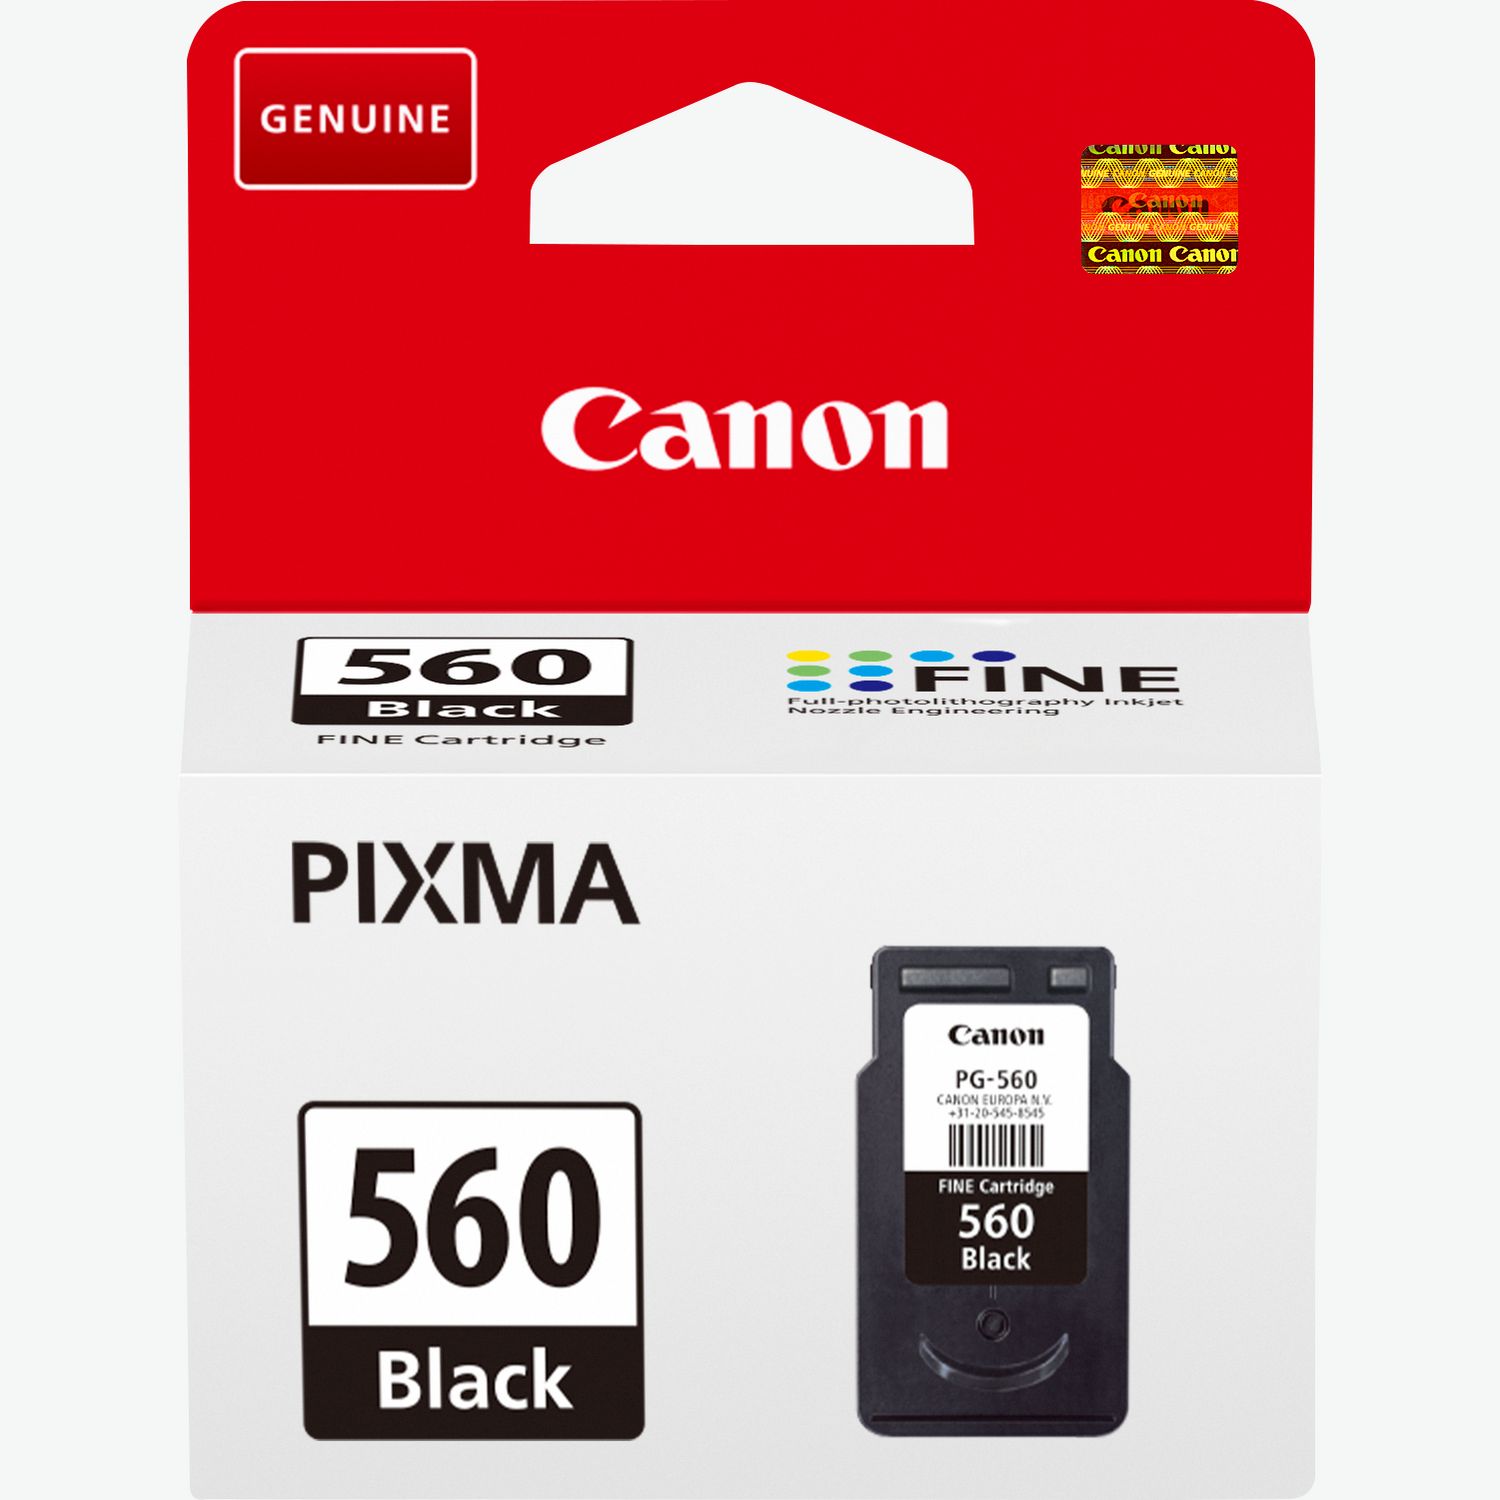 Canon CNMMX532 Impresora multifunción a Color, impresión